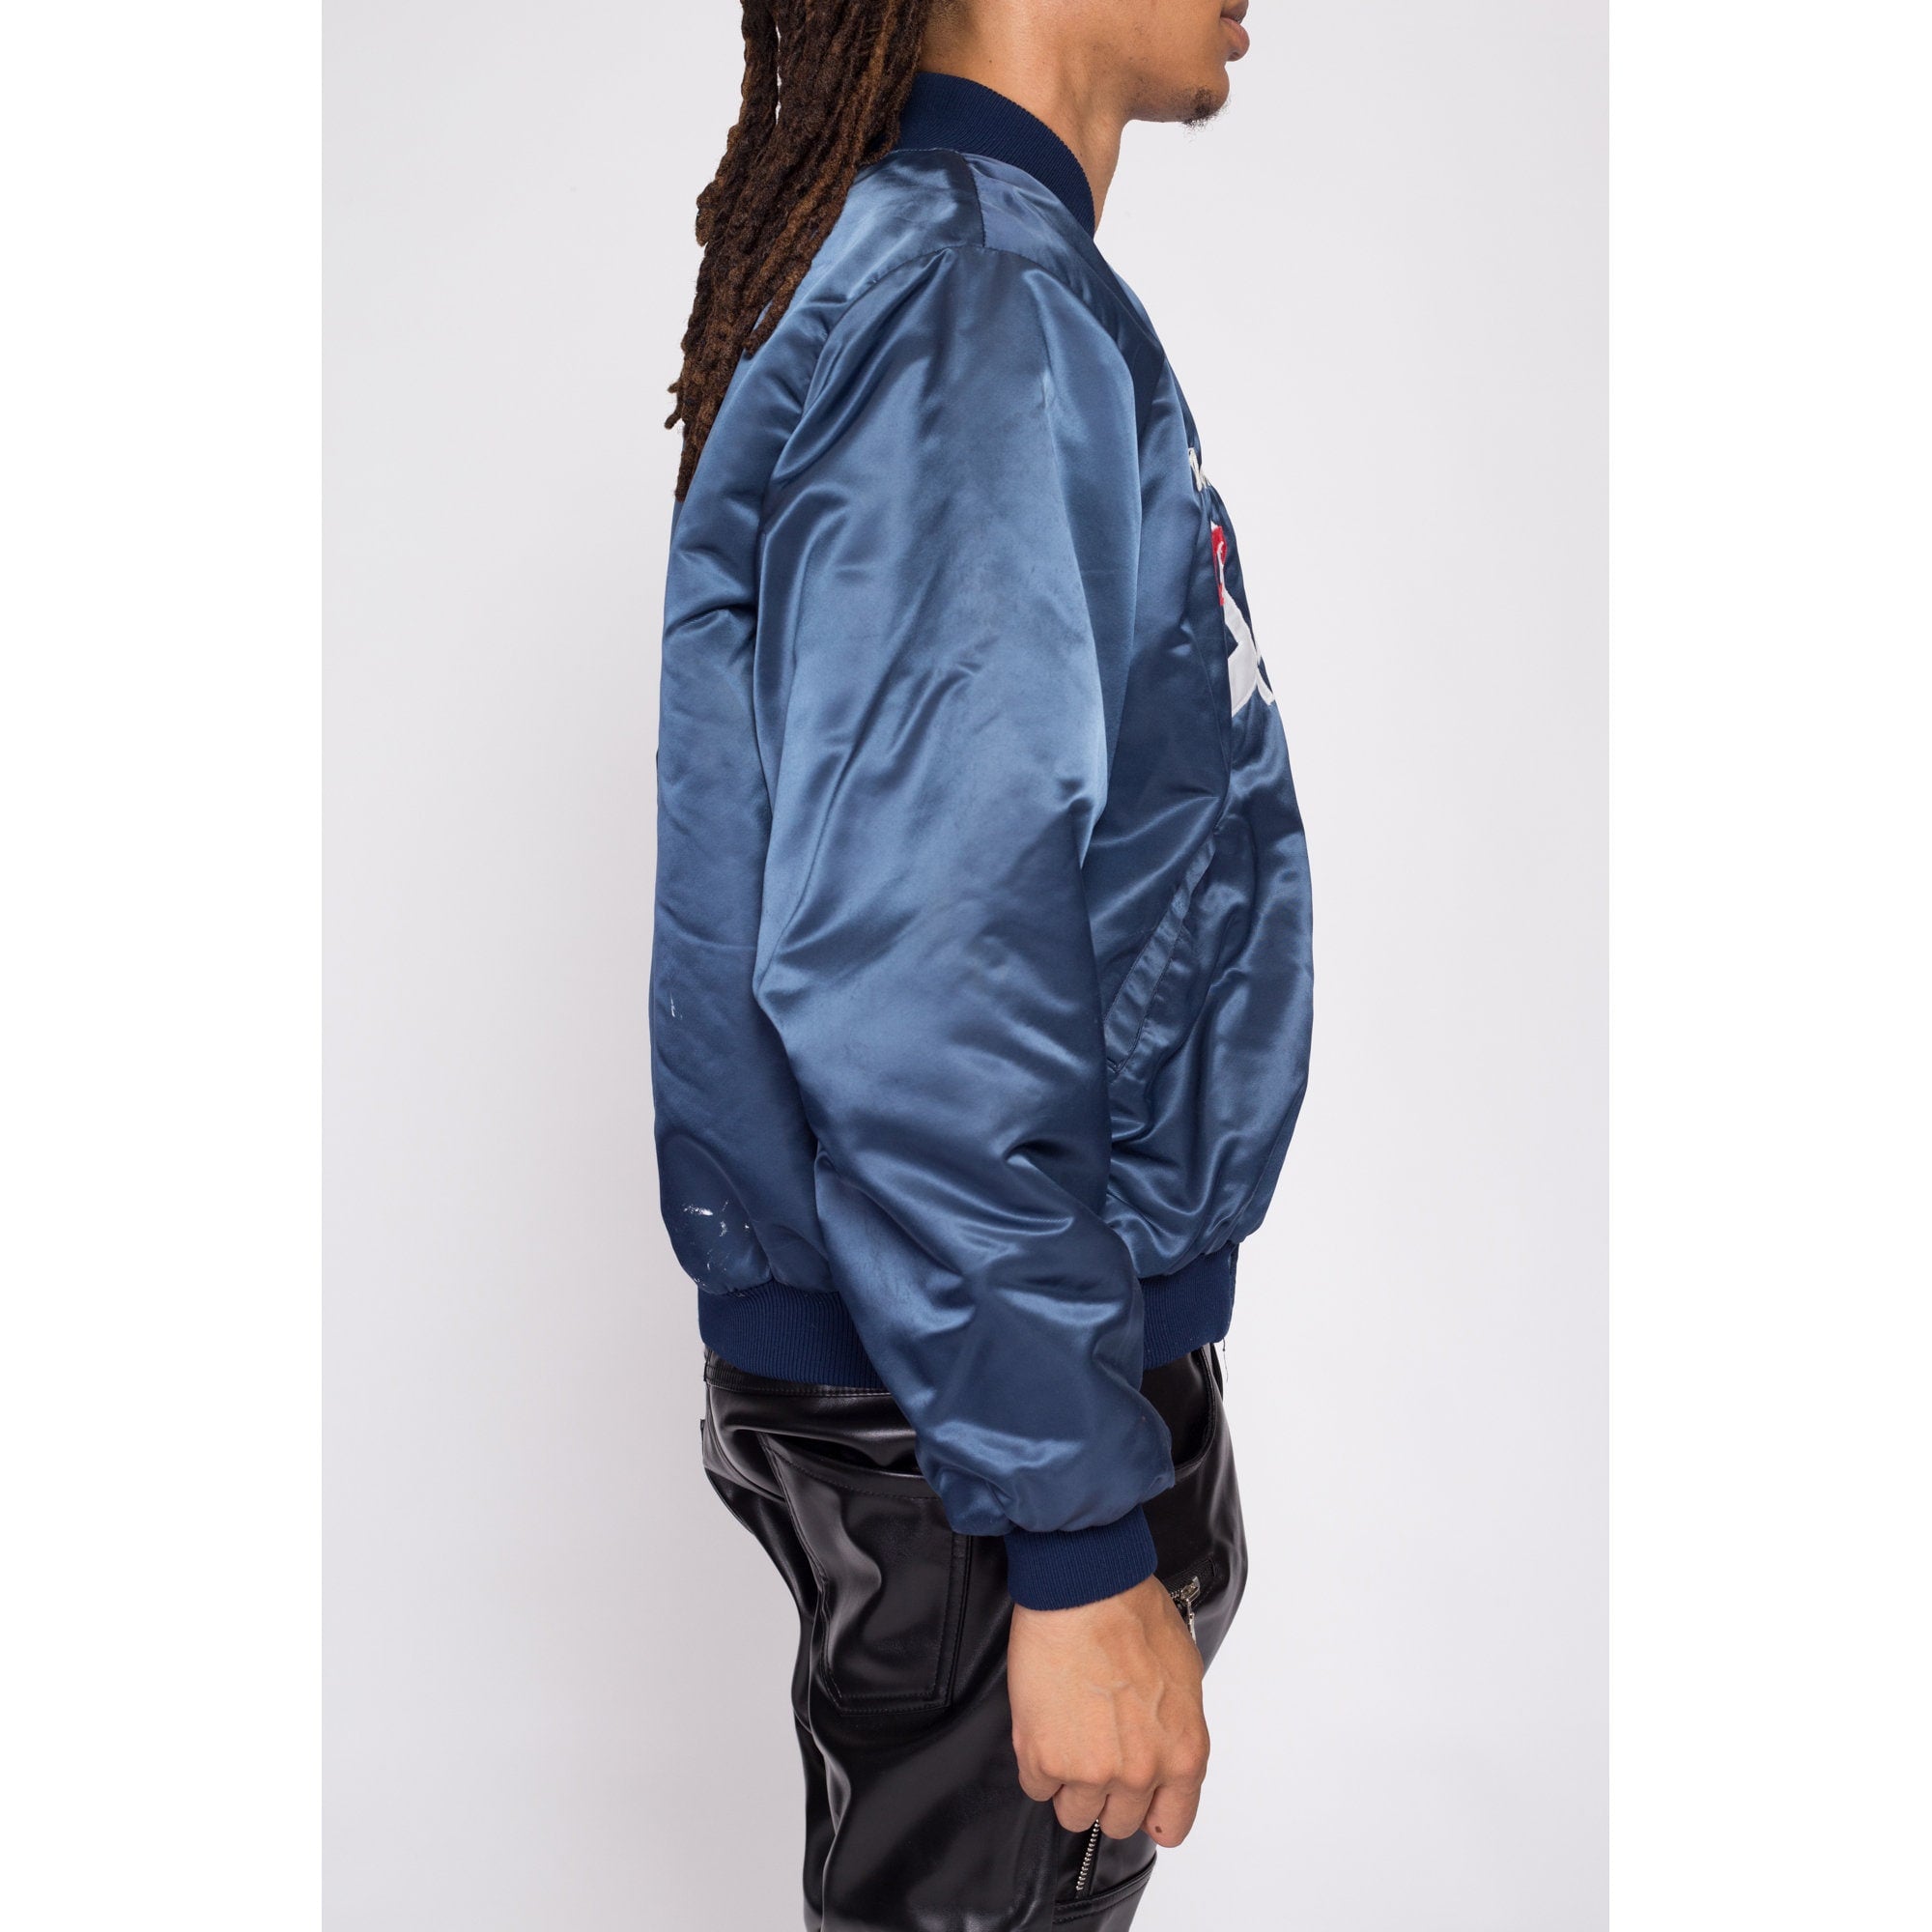 Angels Baseball Jacket, Youth Medium, Zipper Hoodie. Or Ladies XS | eBay